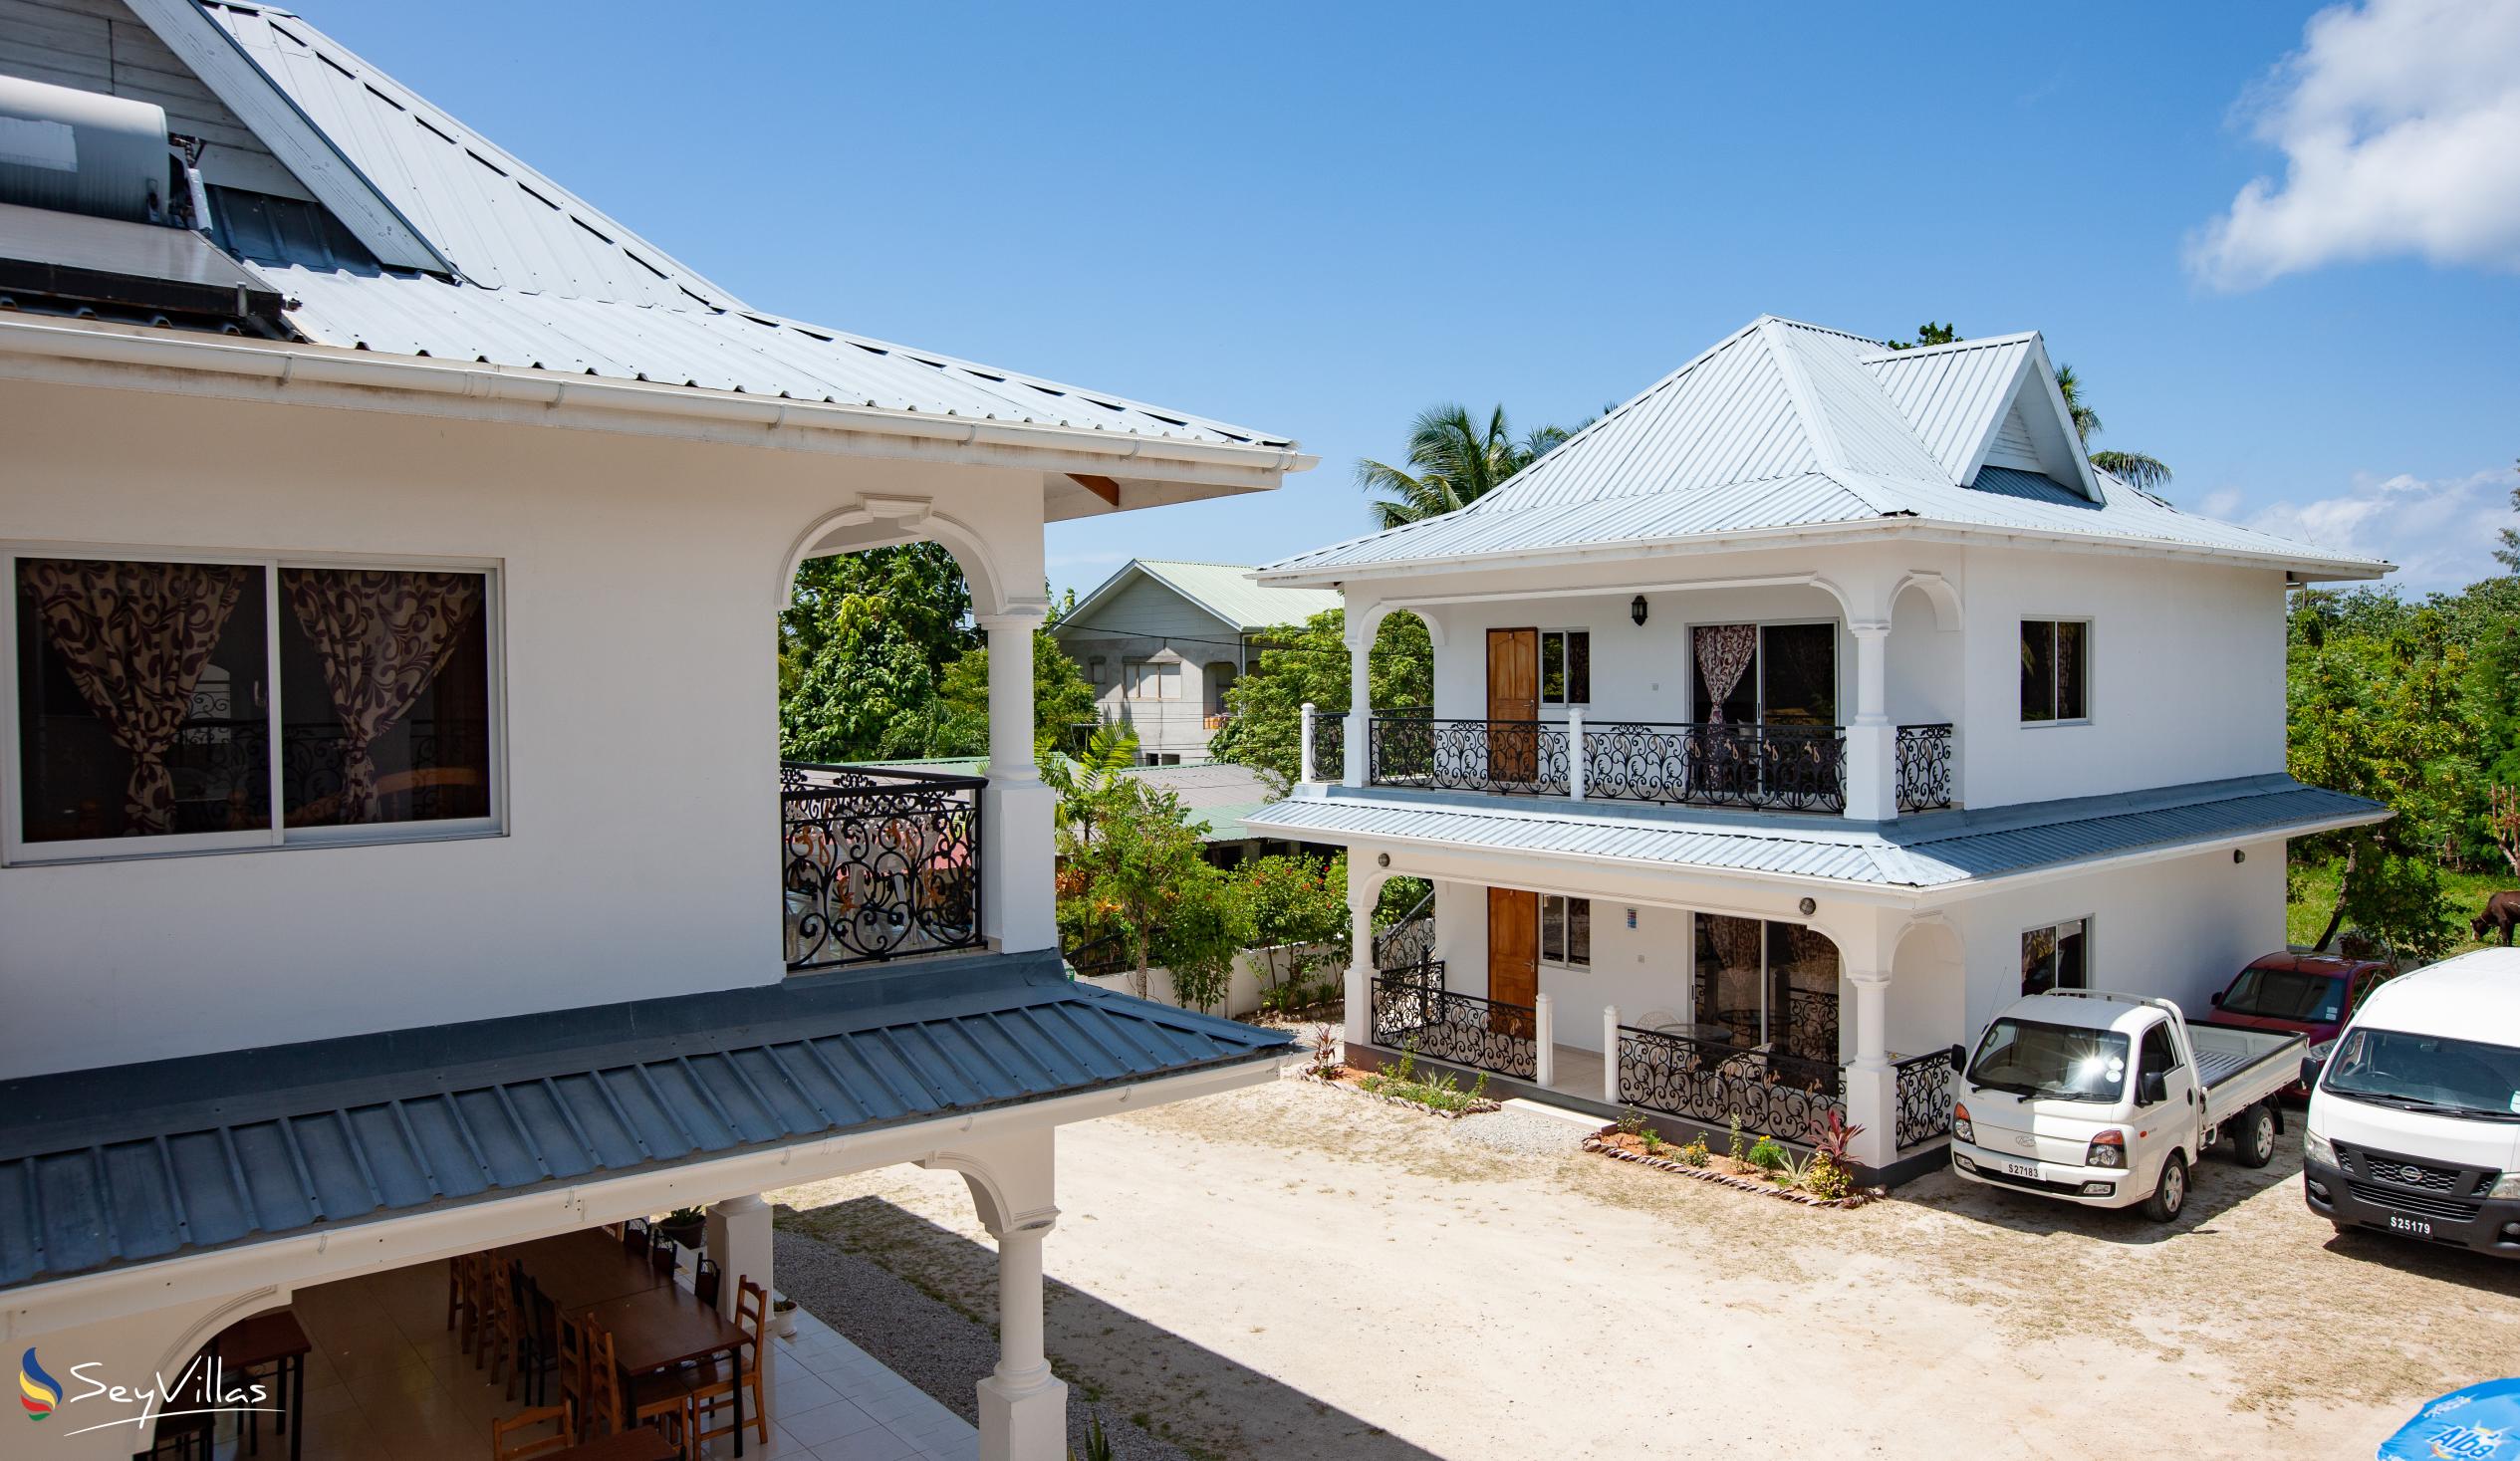 Foto 9: Casadani Luxury Guest House - Aussenbereich - Praslin (Seychellen)